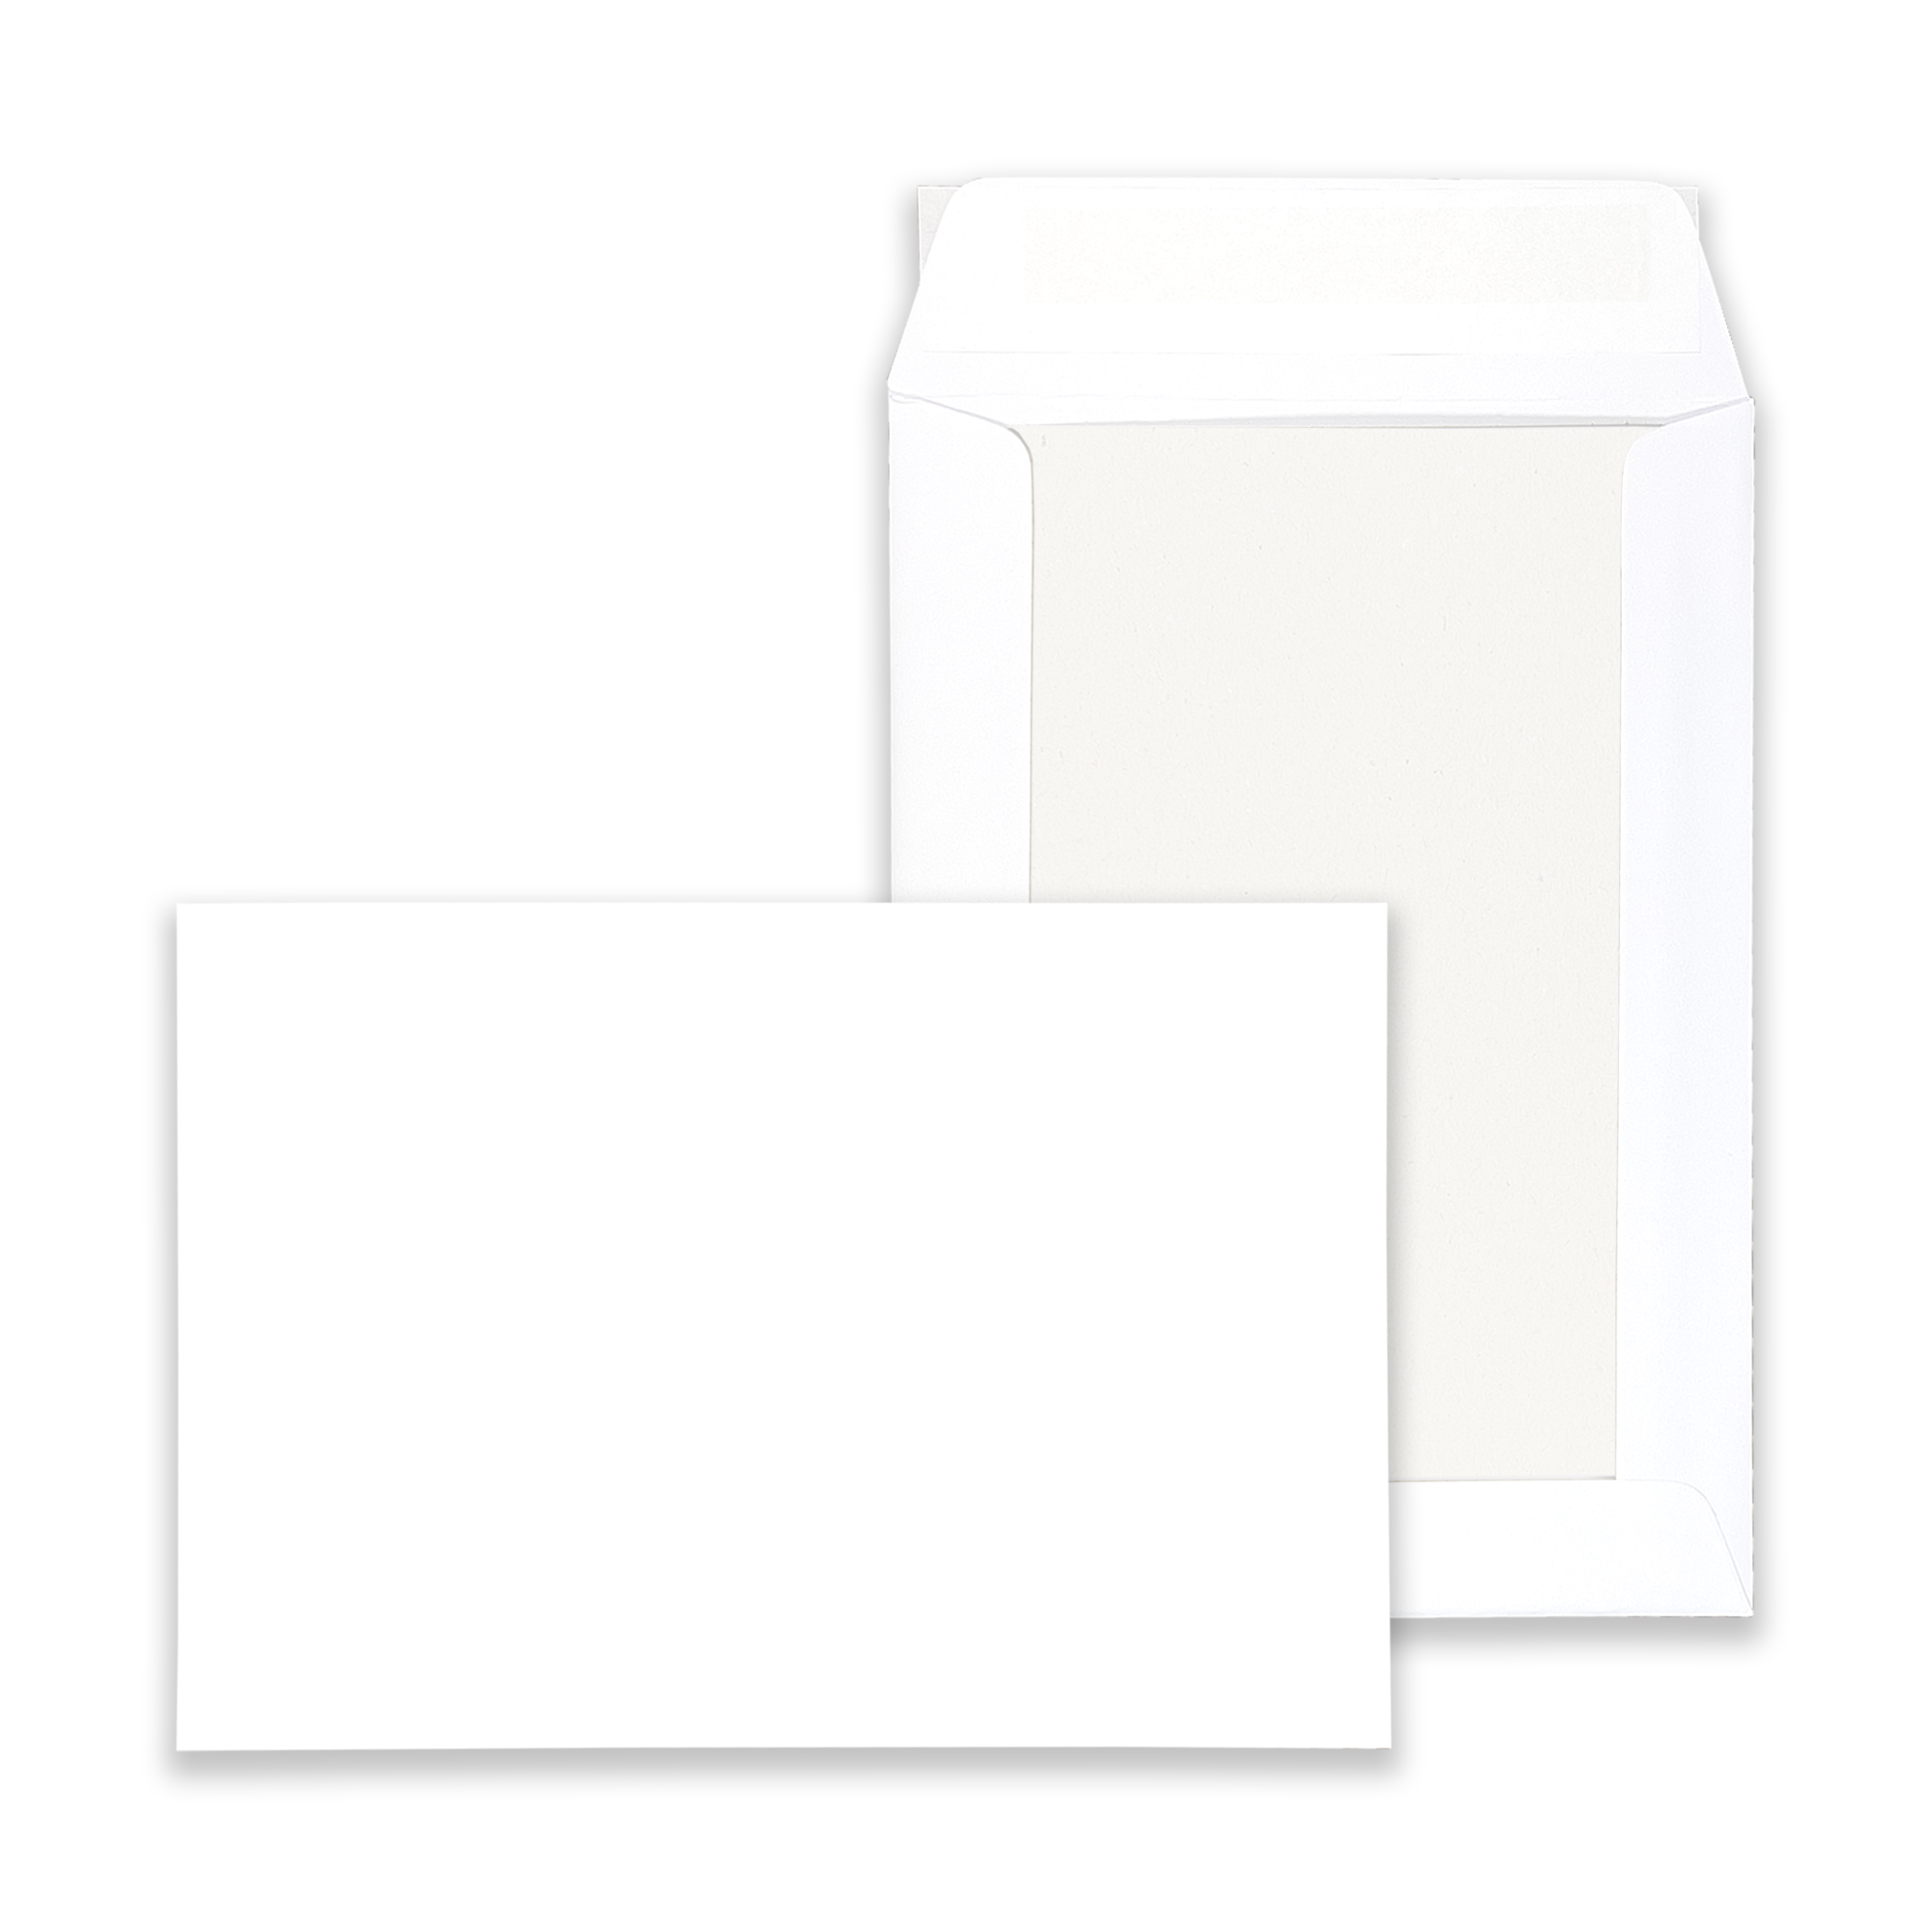 rectangle-white-board-back-envelopes-together